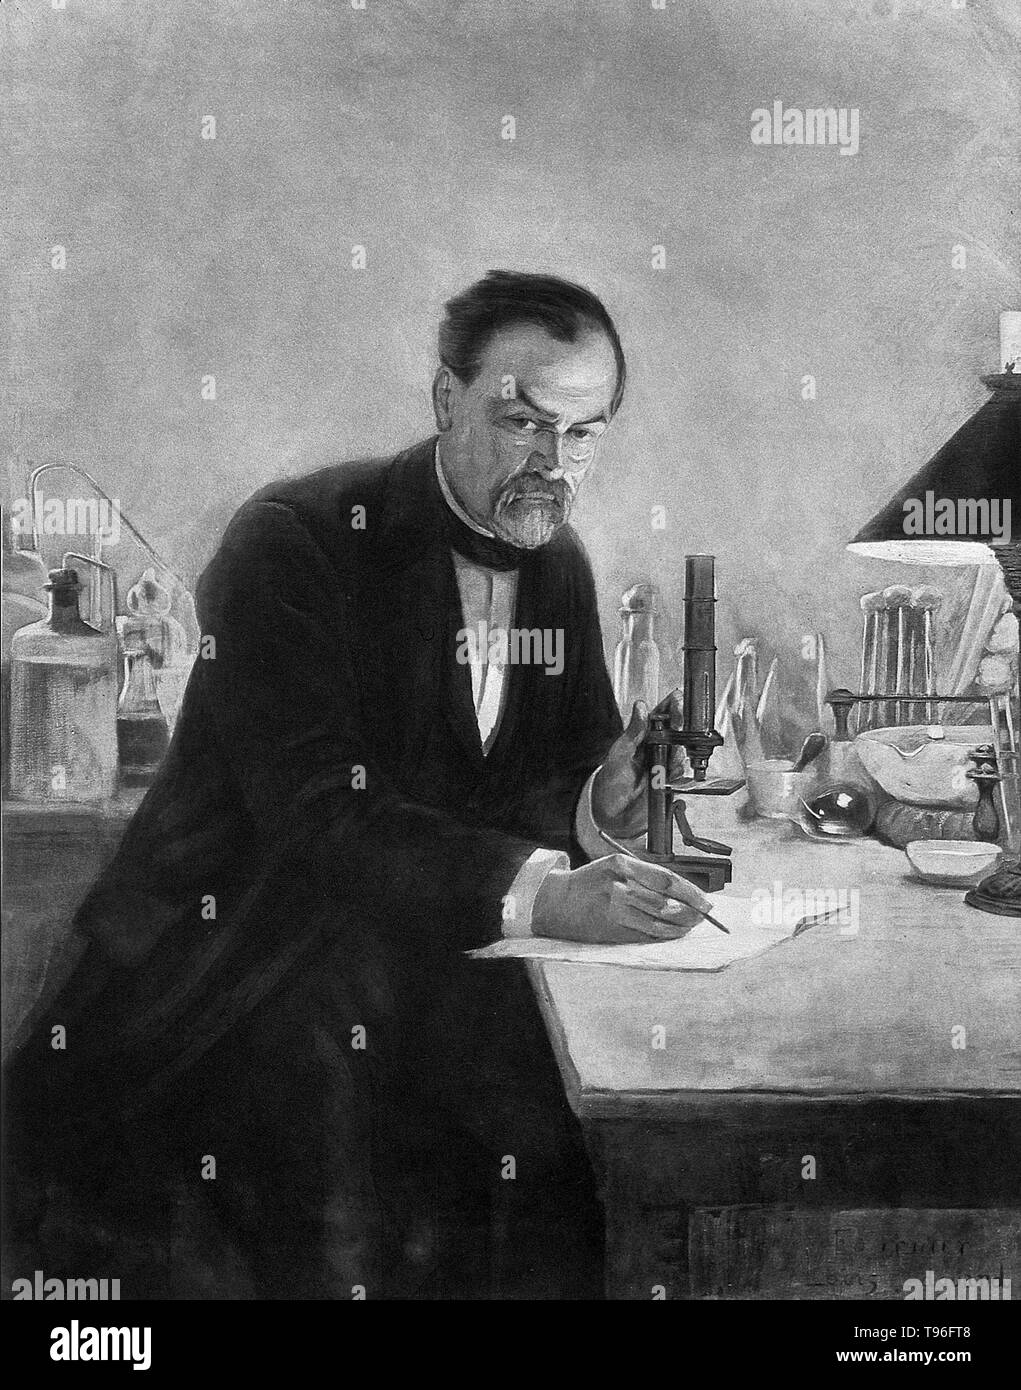 Louis Pasteur dans son laboratoire. Louis Pasteur (1822 -1895) était un chimiste français, et qui a fondé le bactériologiste La science de la microbiologie. Pasteur découvrit que la maladie peut être causée par une bactérie transmise de personne à personne (la théorie des germes de maladies). Il a également mis au point des vaccins contre la rage et de l'anthrax. Pasteur a également constaté que le chauffage des aliments et boissons à la légère pouvait les préserver de la dégradation. Ce processus de pasteurisation est maintenant largement utilisé dans l'industrie alimentaire. Illustration par E. L. Banque D'Images